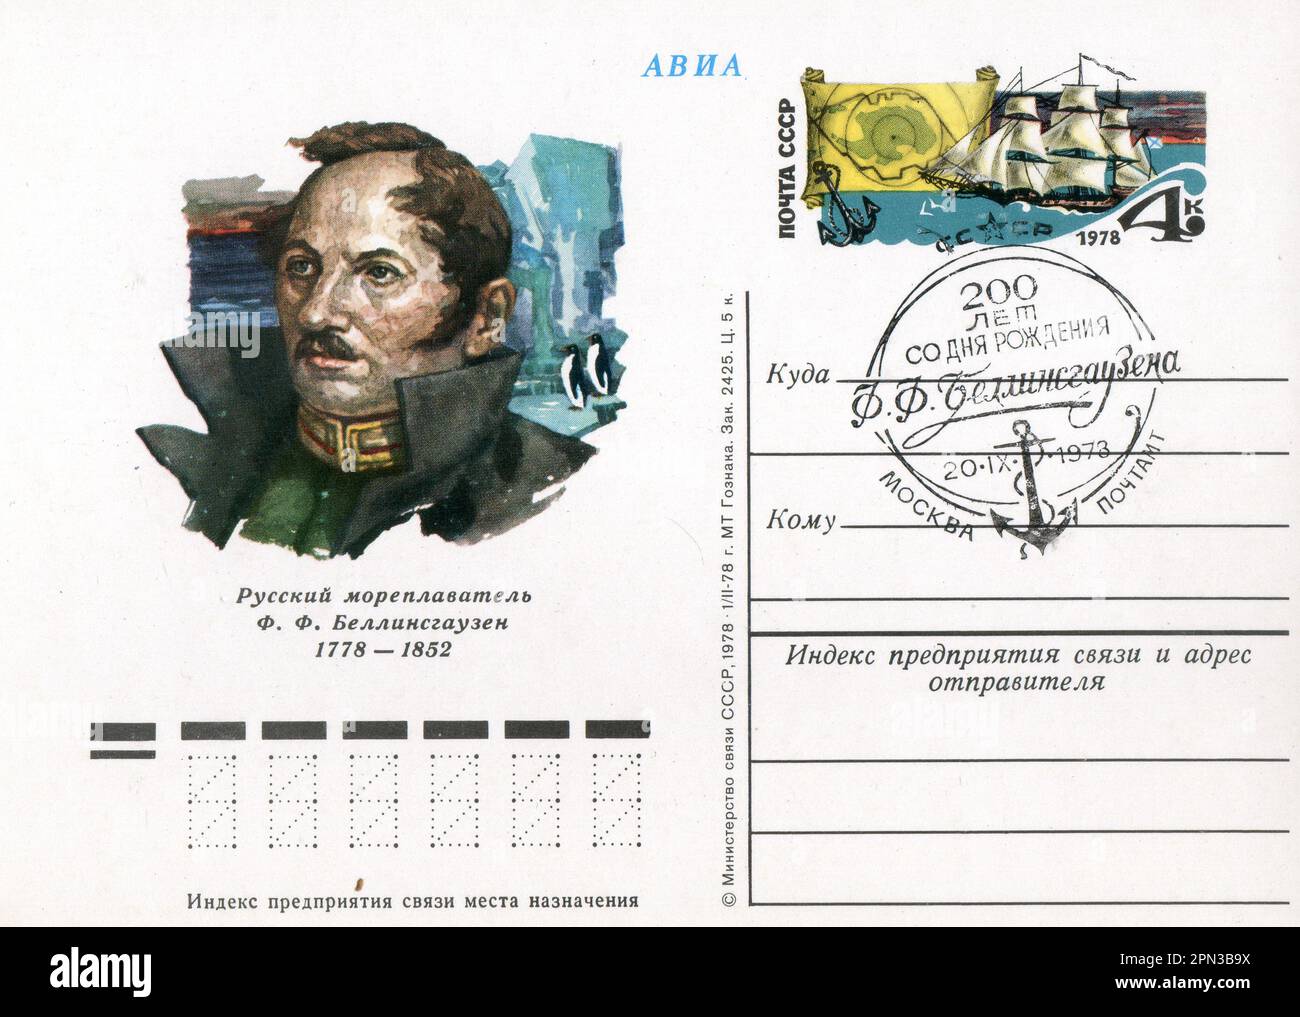 Fabian Gottlieb Thaddeus von Bellingshausen (20. September [O.S. 9. September] 1778 – 25. Januar [O.S. 13. Januar] 1852) war Kartograf, Entdecker und Marineoffizier des Russischen Reiches, der schließlich in den Rang eines Admirals aufstieg. FDC Old Vintage Postkarte der UdSSR, 1978. Stockfoto